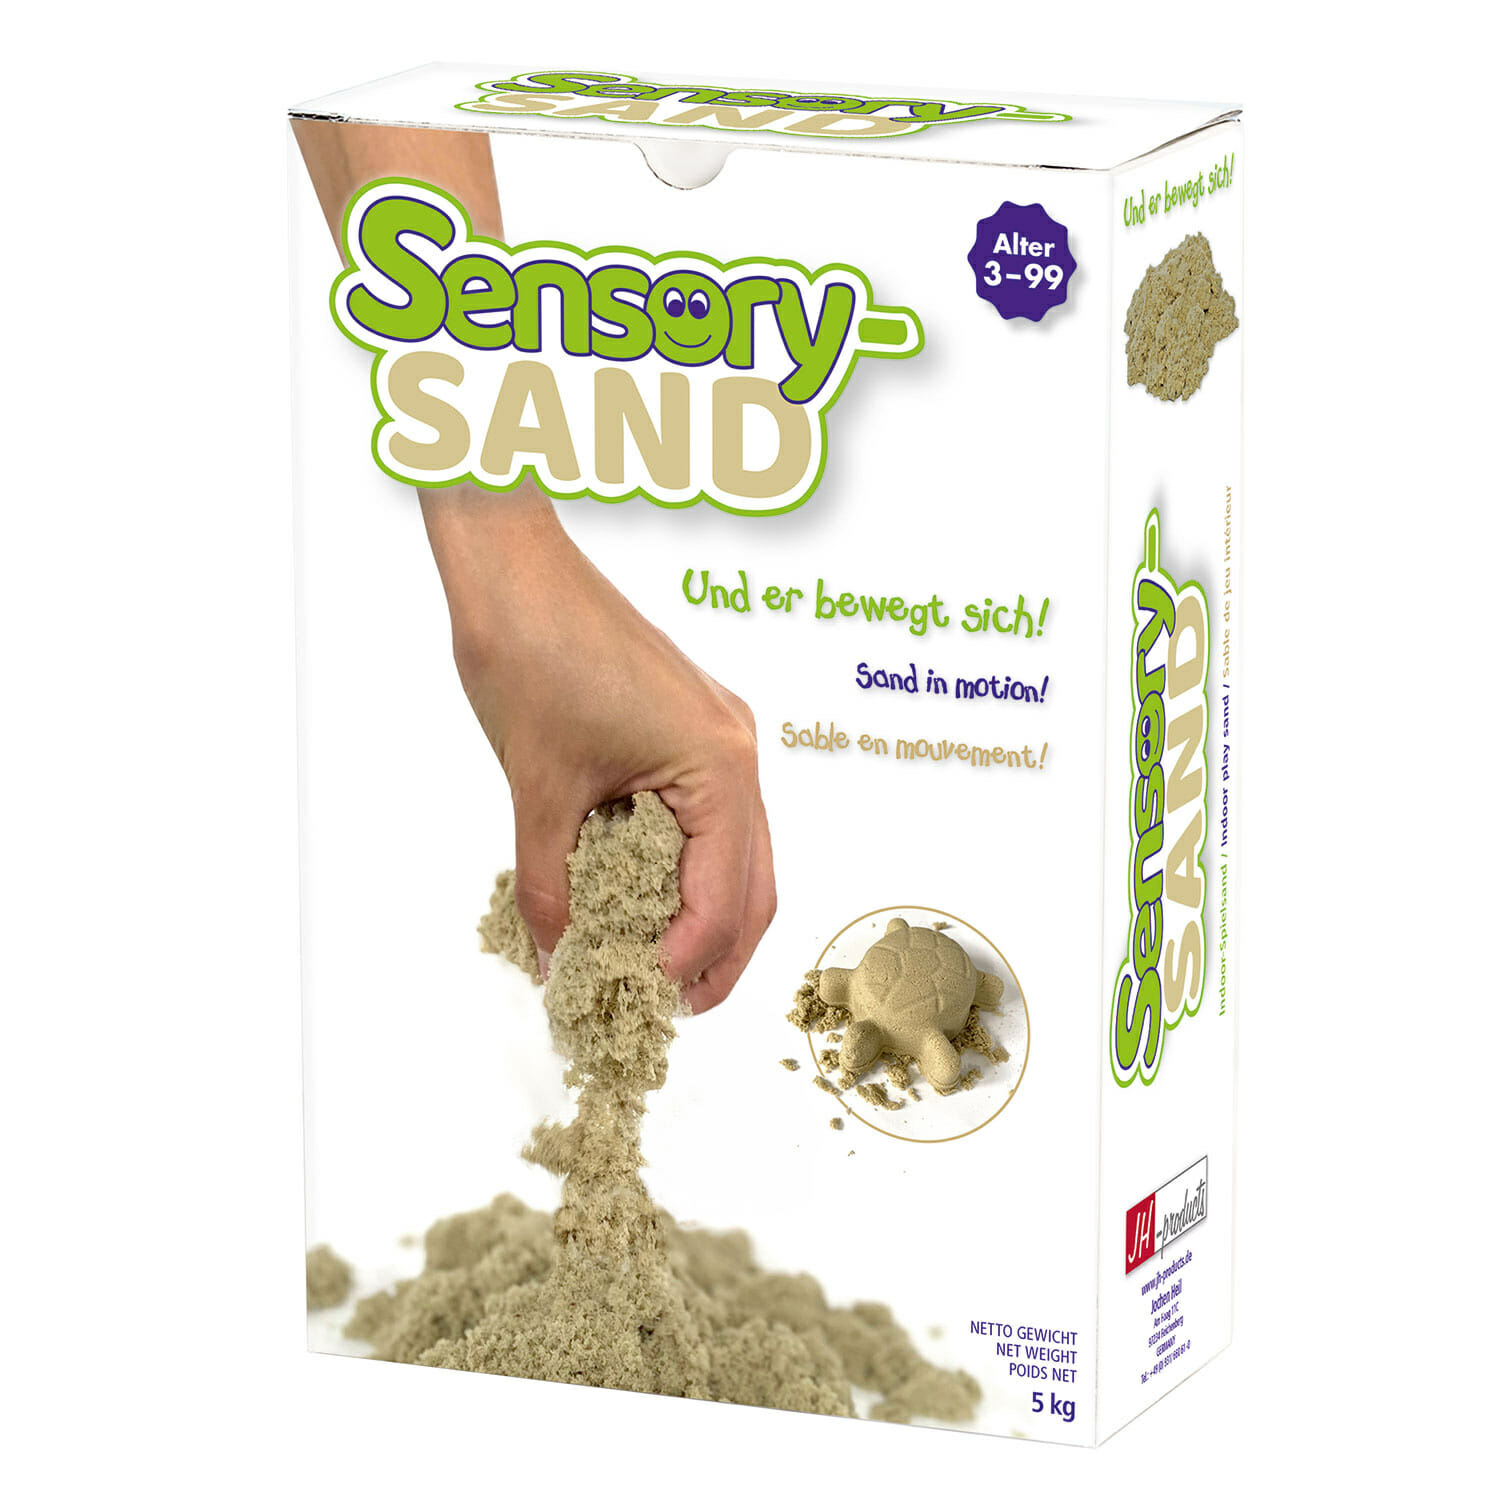 Sensory-Sand - Jouer avec ce sable cinétique est relaxant